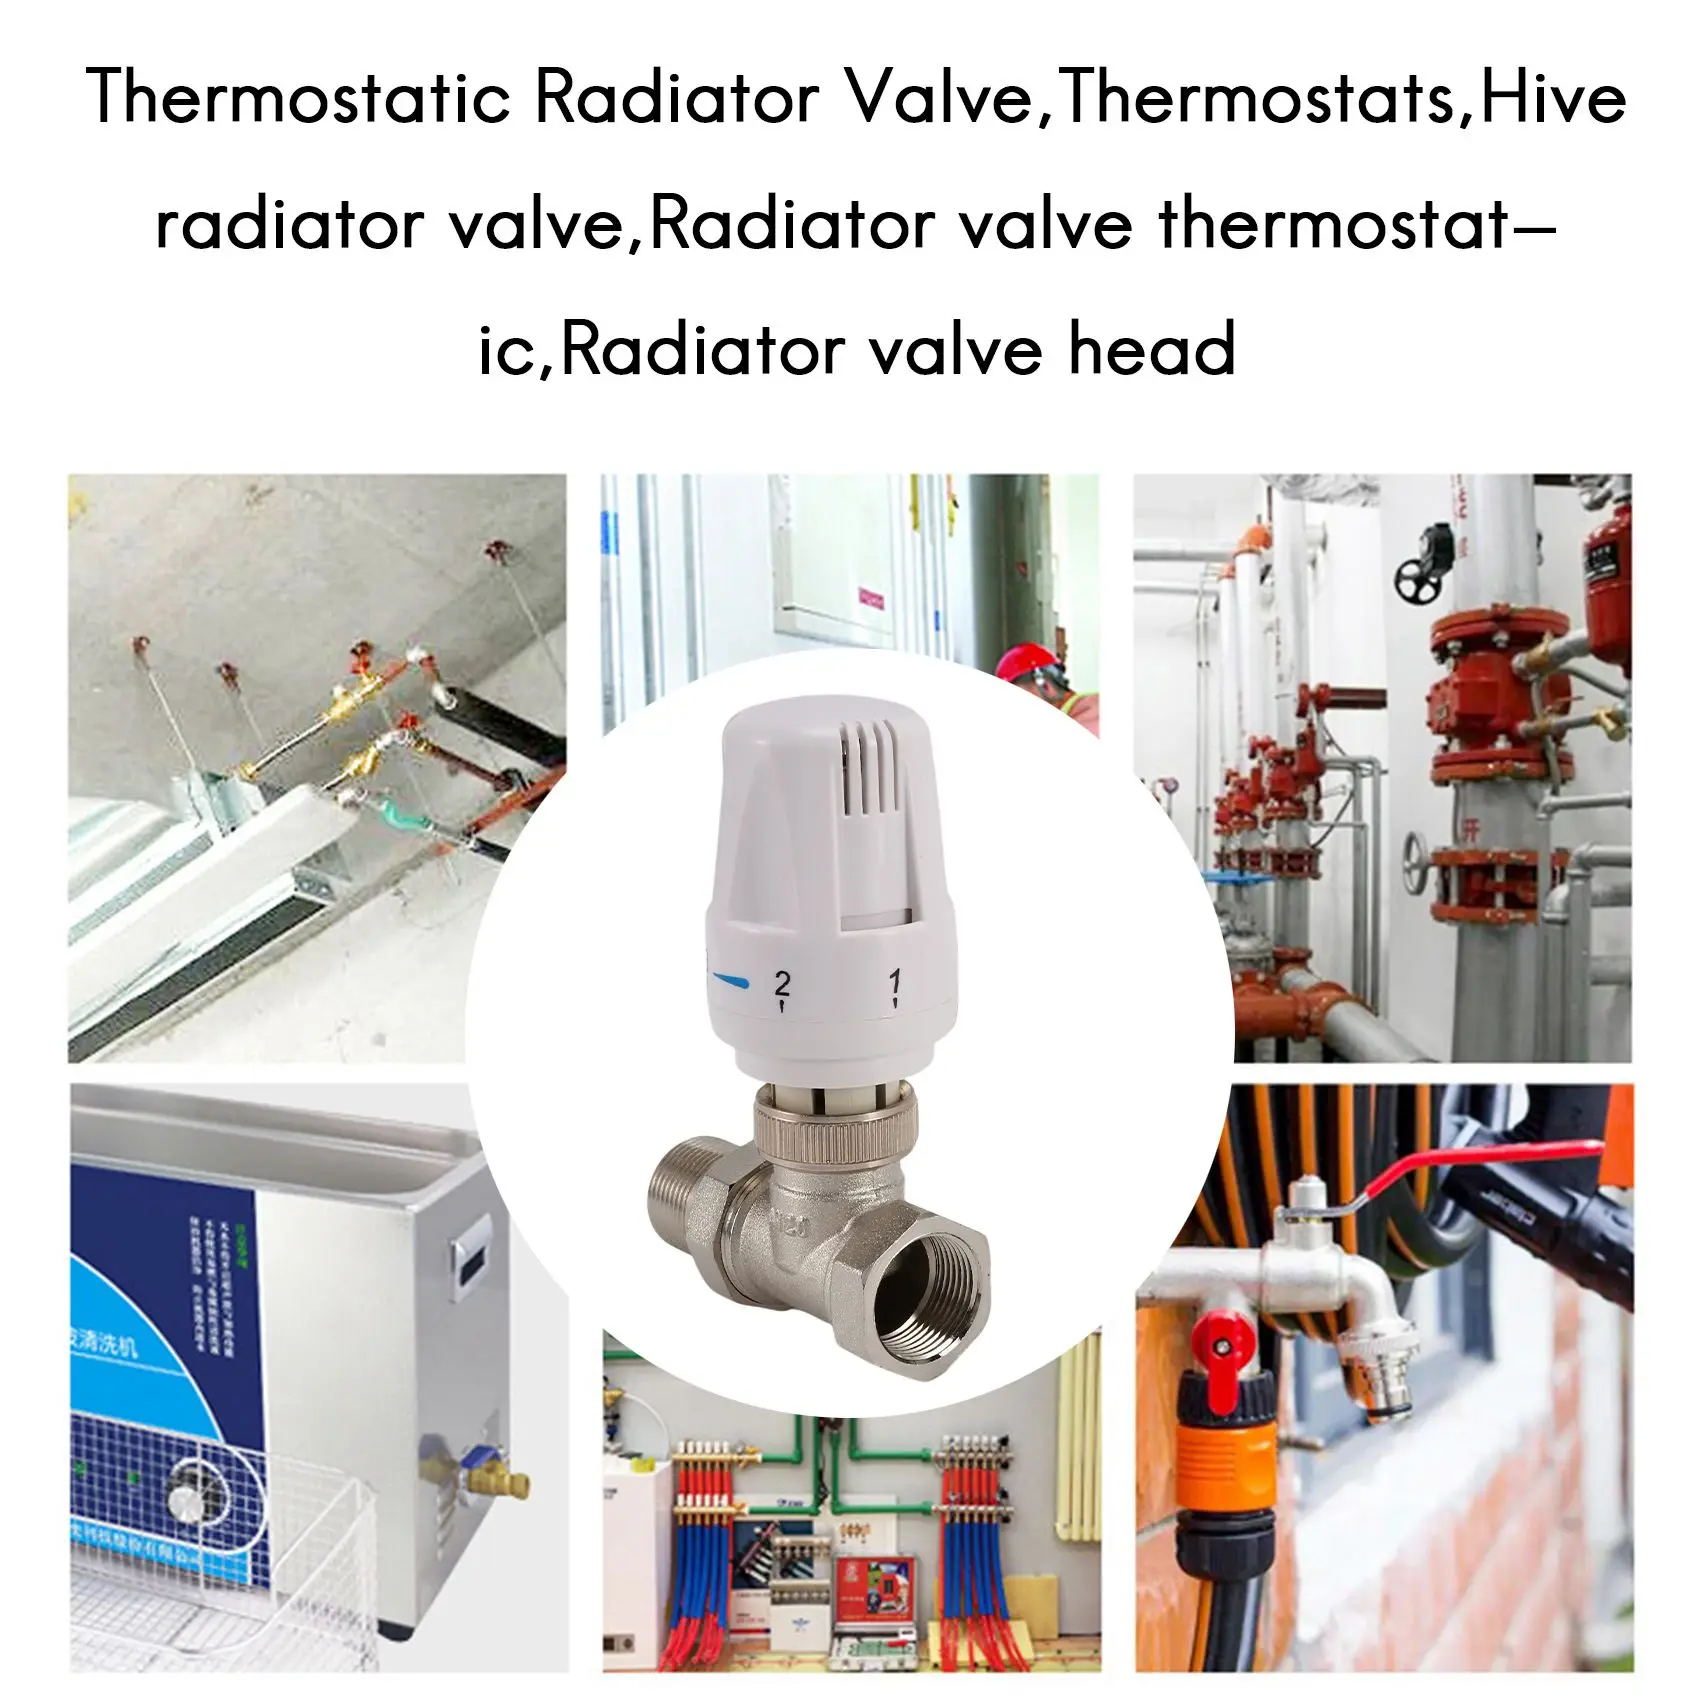 

Латунный термостатический клапан радиатора 3/4 дюйма прямого типа DN20, автоматический клапан регулировки температуры, нагрев пола